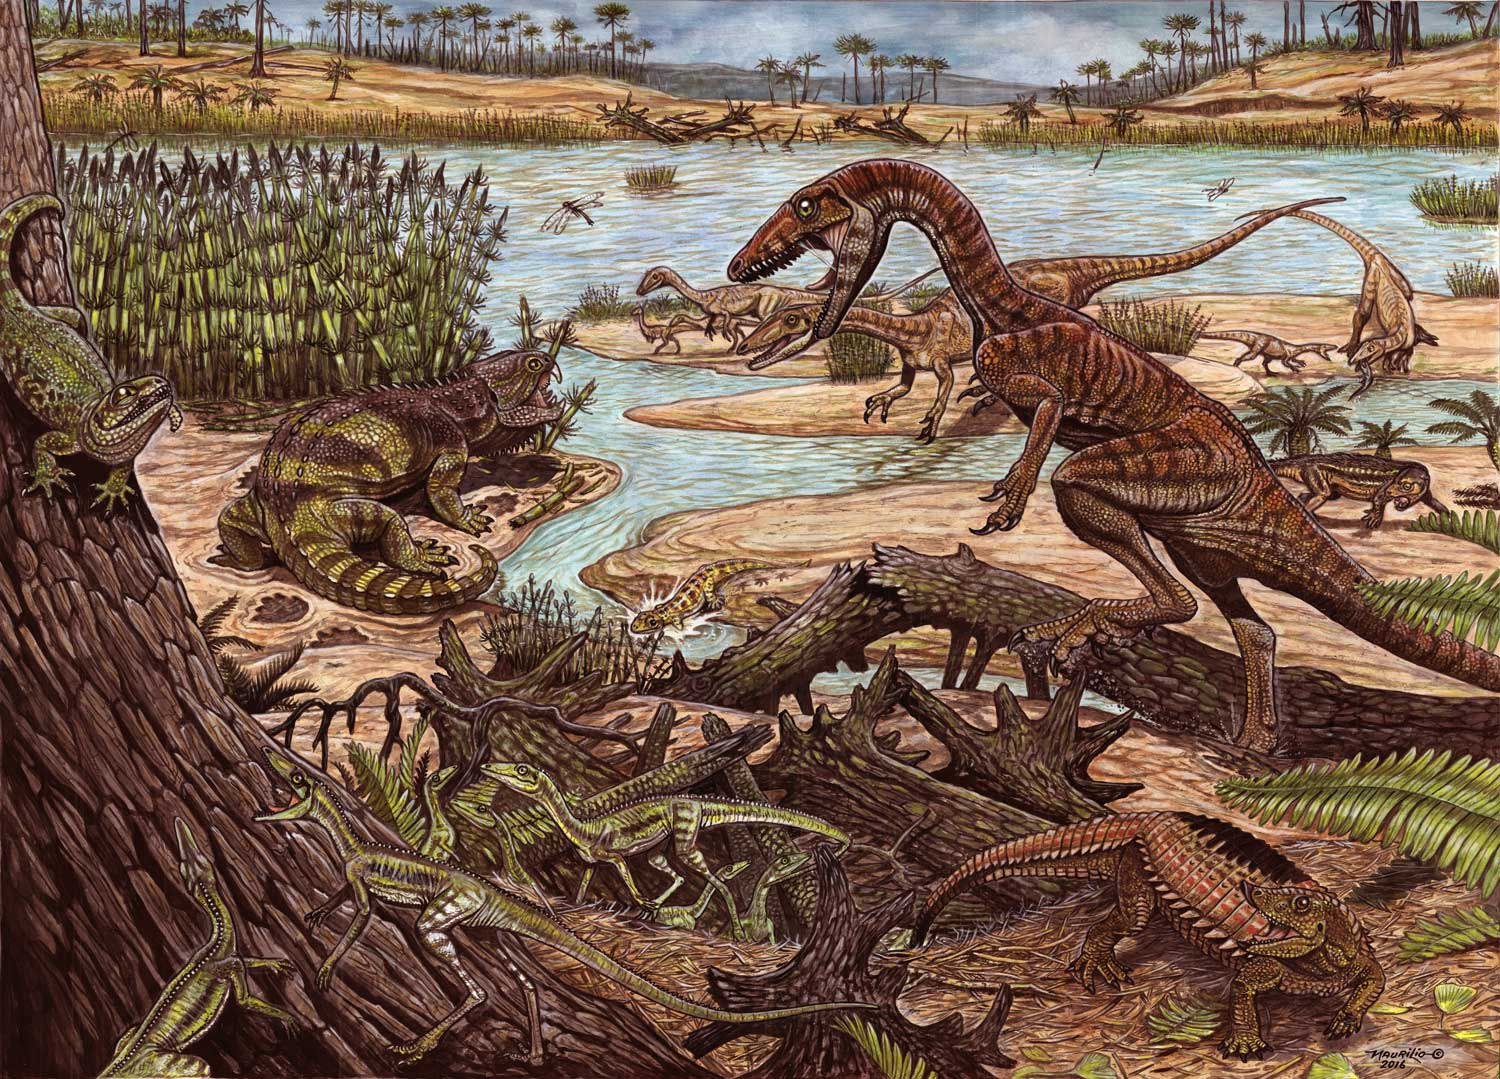 Возникновение первых птиц эра. Динозавры Триасового периода. Меловой период мезозойской эры. Первые динозавры Триасового периода. Триасовый период мезозойской эры рептилии.